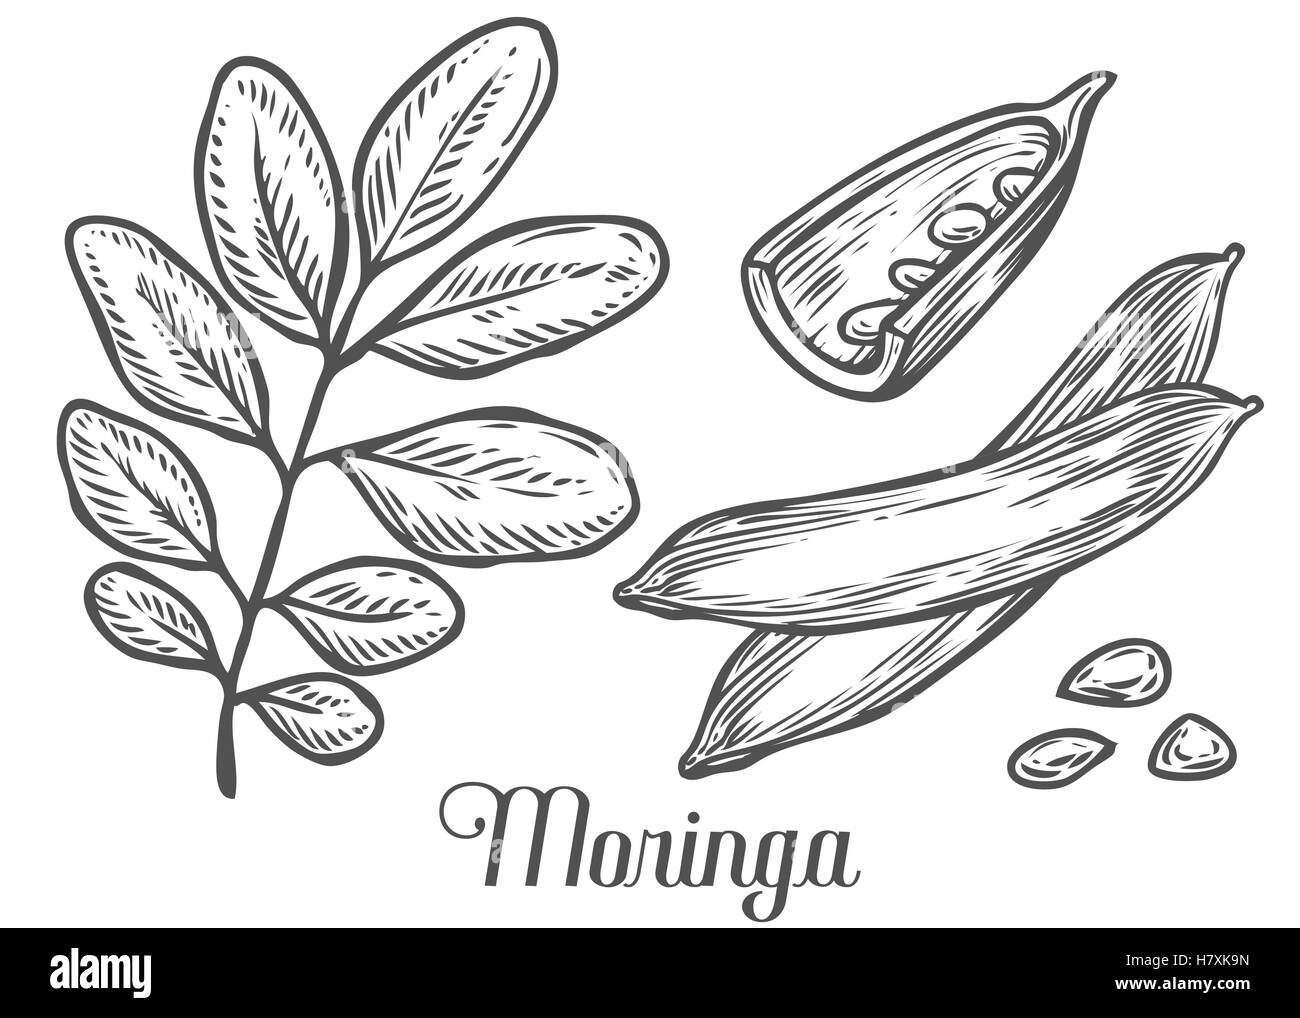 Moringa-Pflanze, Blatt und Samen. Moringa Vintage skizzieren gravierte handgezeichnete Vektor-Illustration. Weißen Hintergrund. Stock Vektor